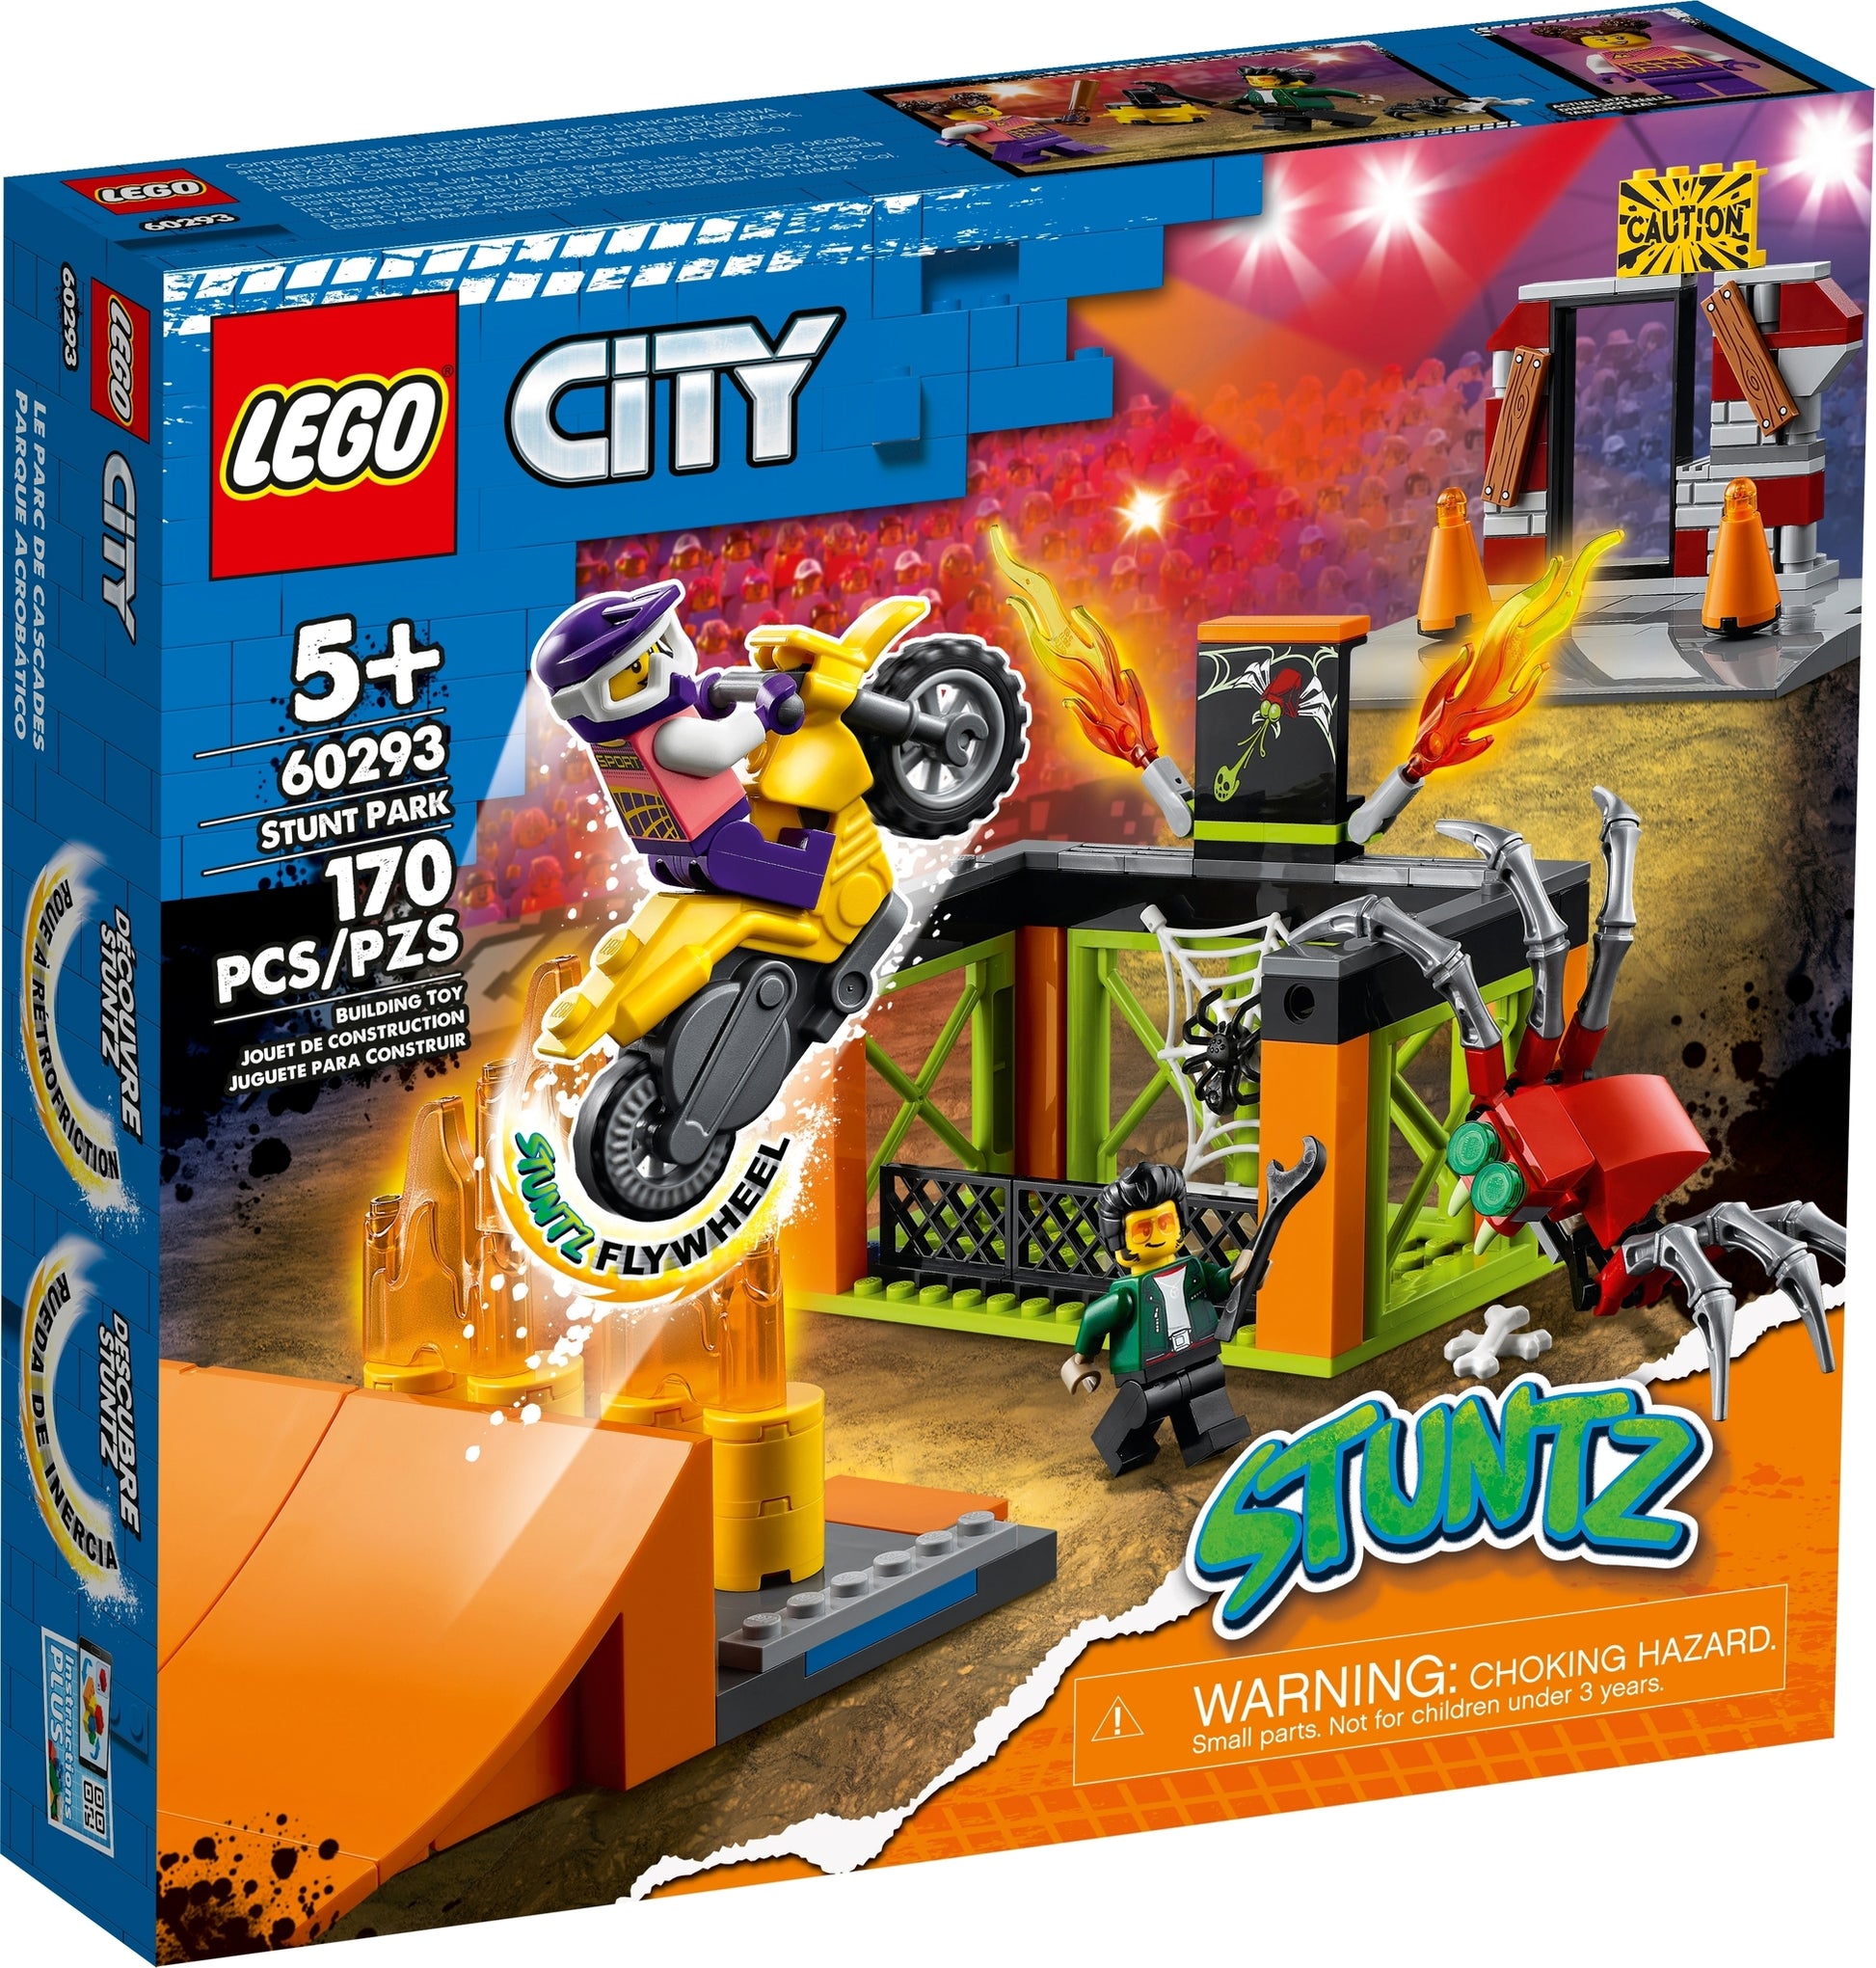 Lego City Scavatrice per costruzioni 60385